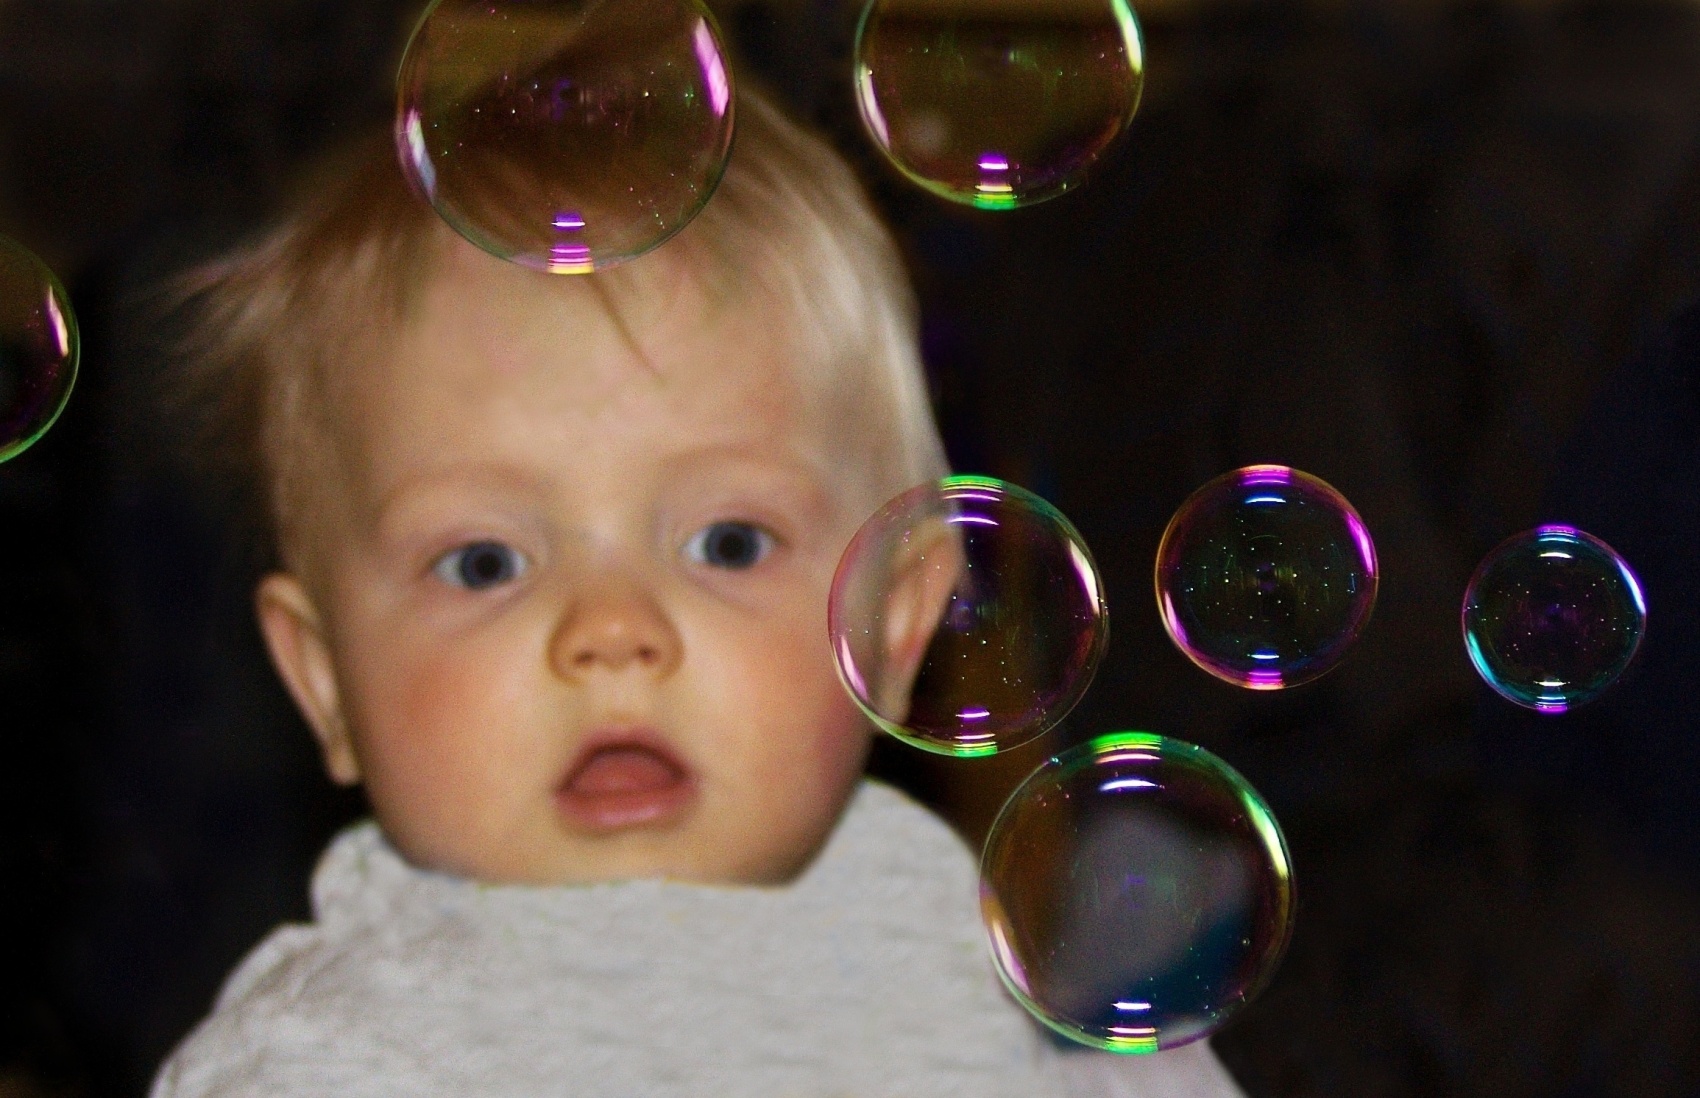 Poprvé uviděl bubliny